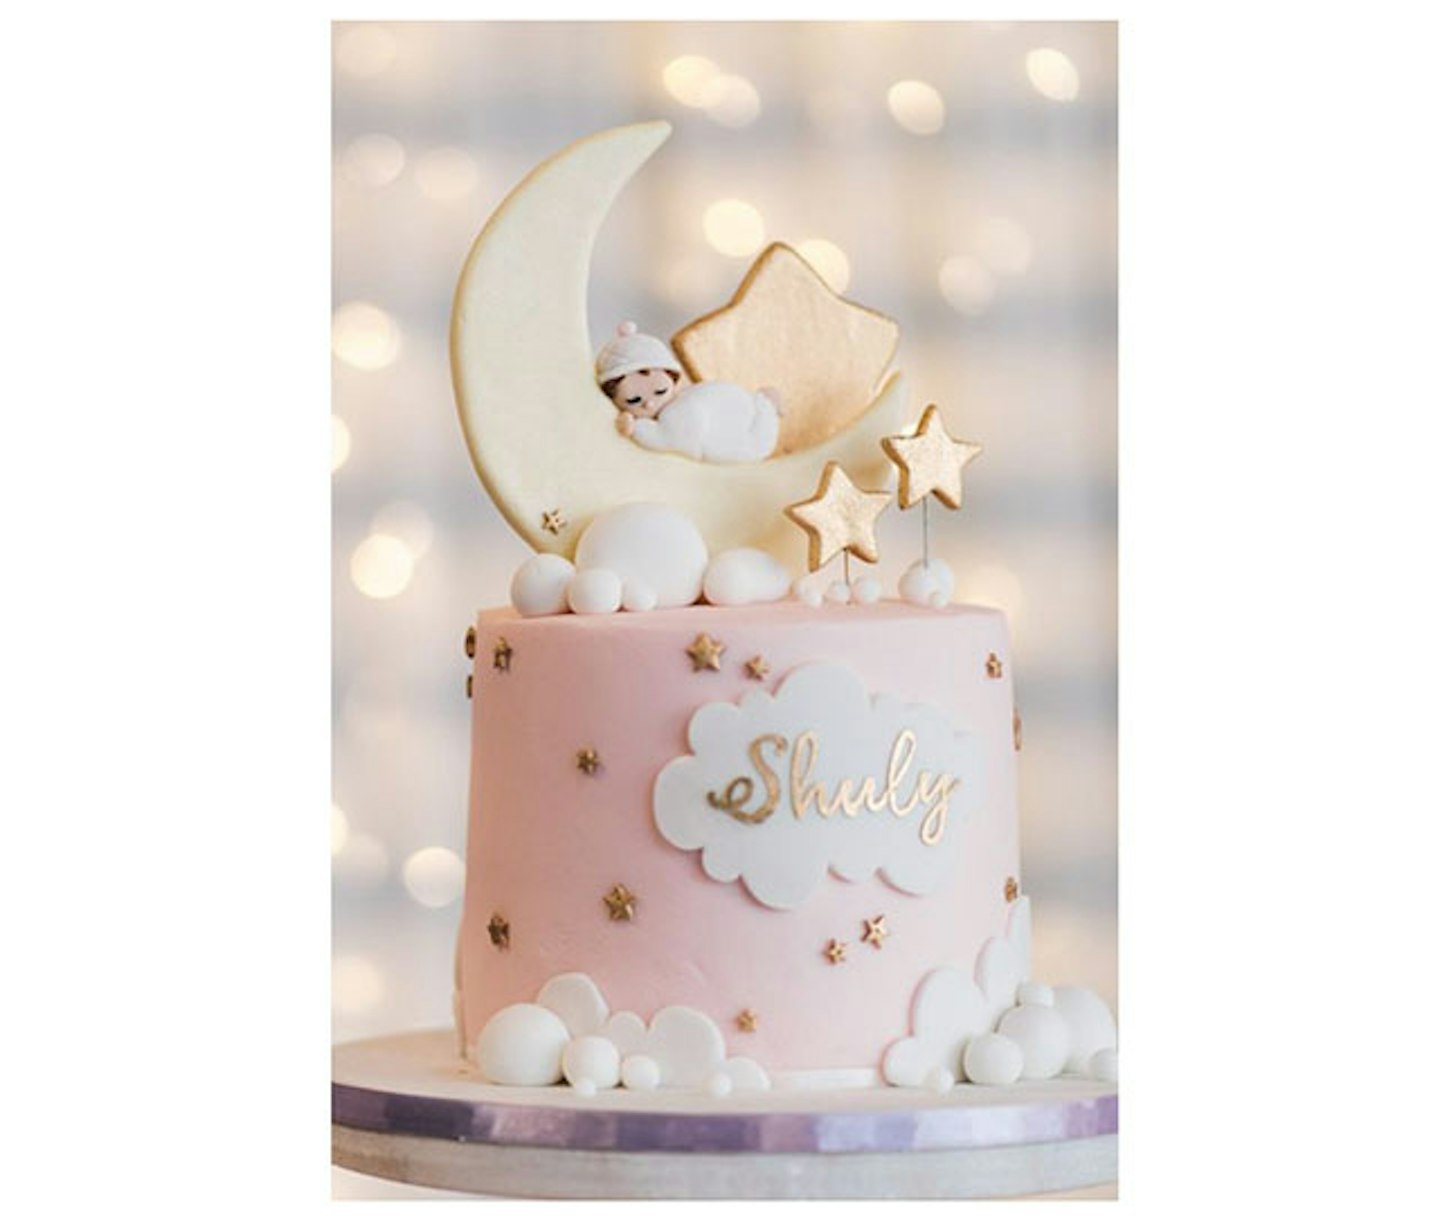 Twinkle twinkle little star cake